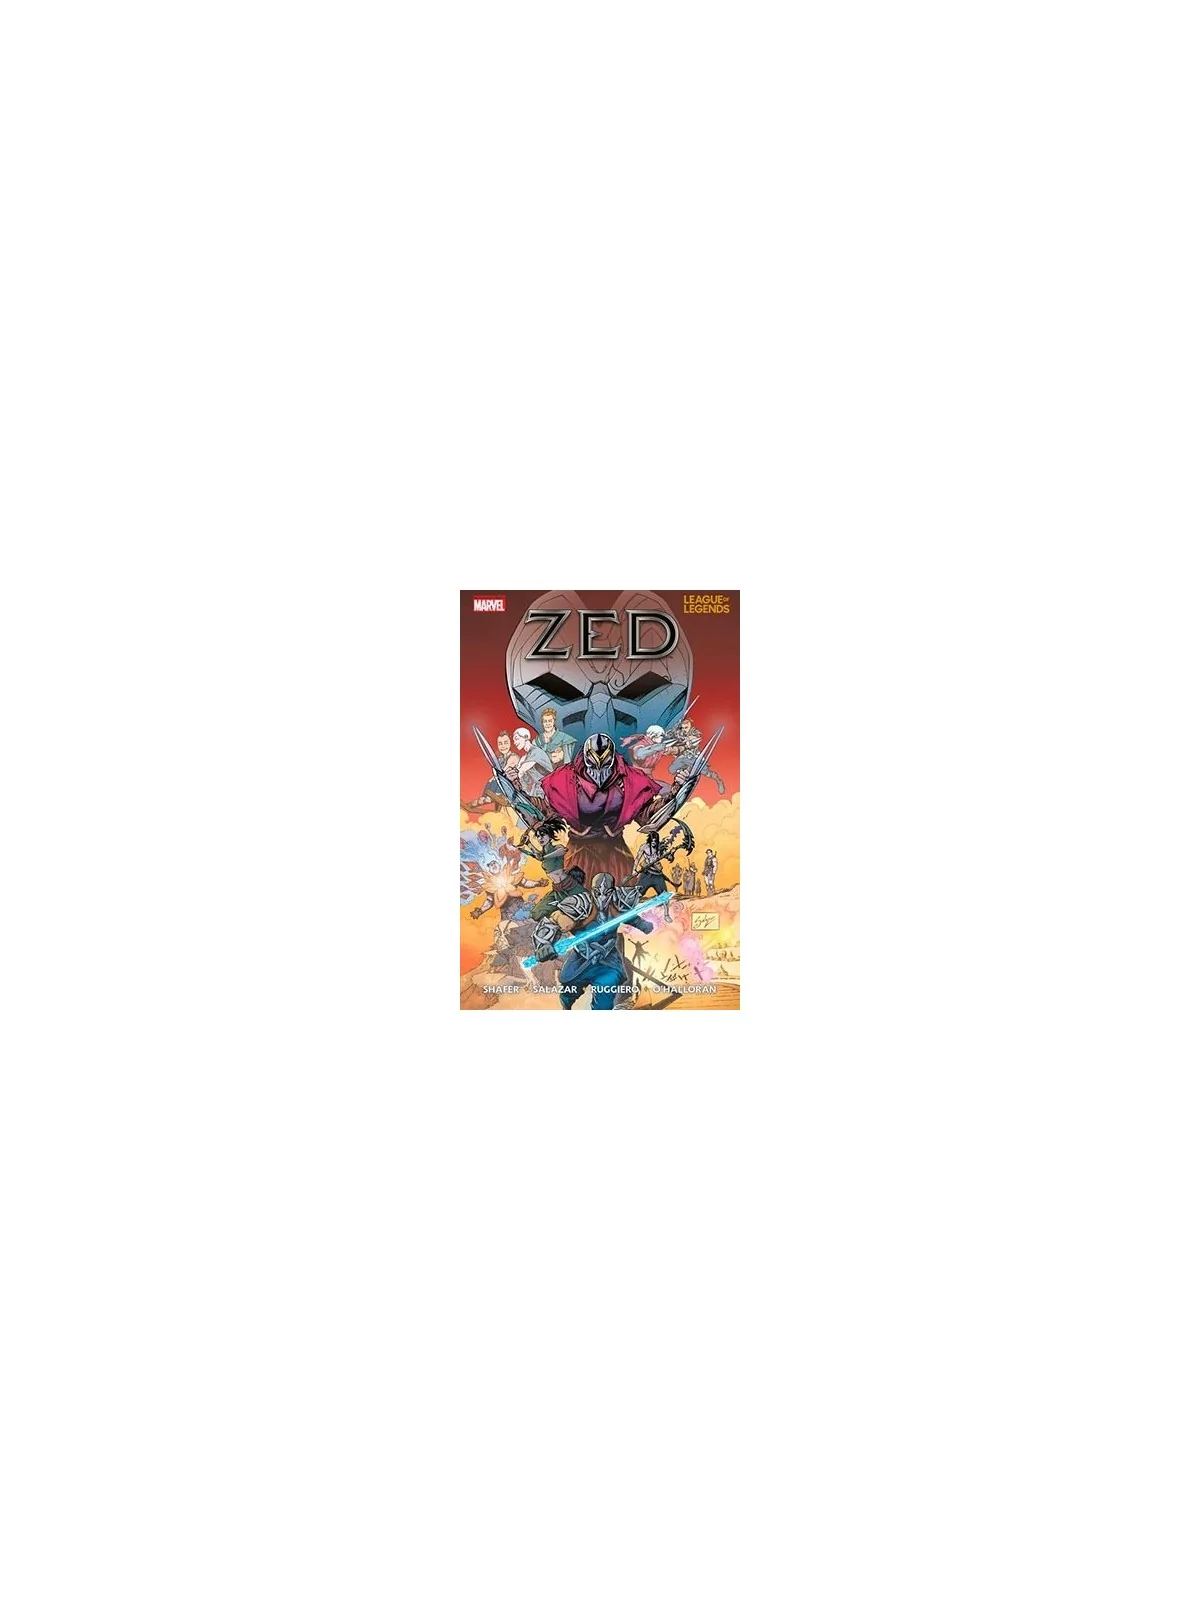 Comprar League of Legends: Zed barato al mejor precio 17,10 € de Panin